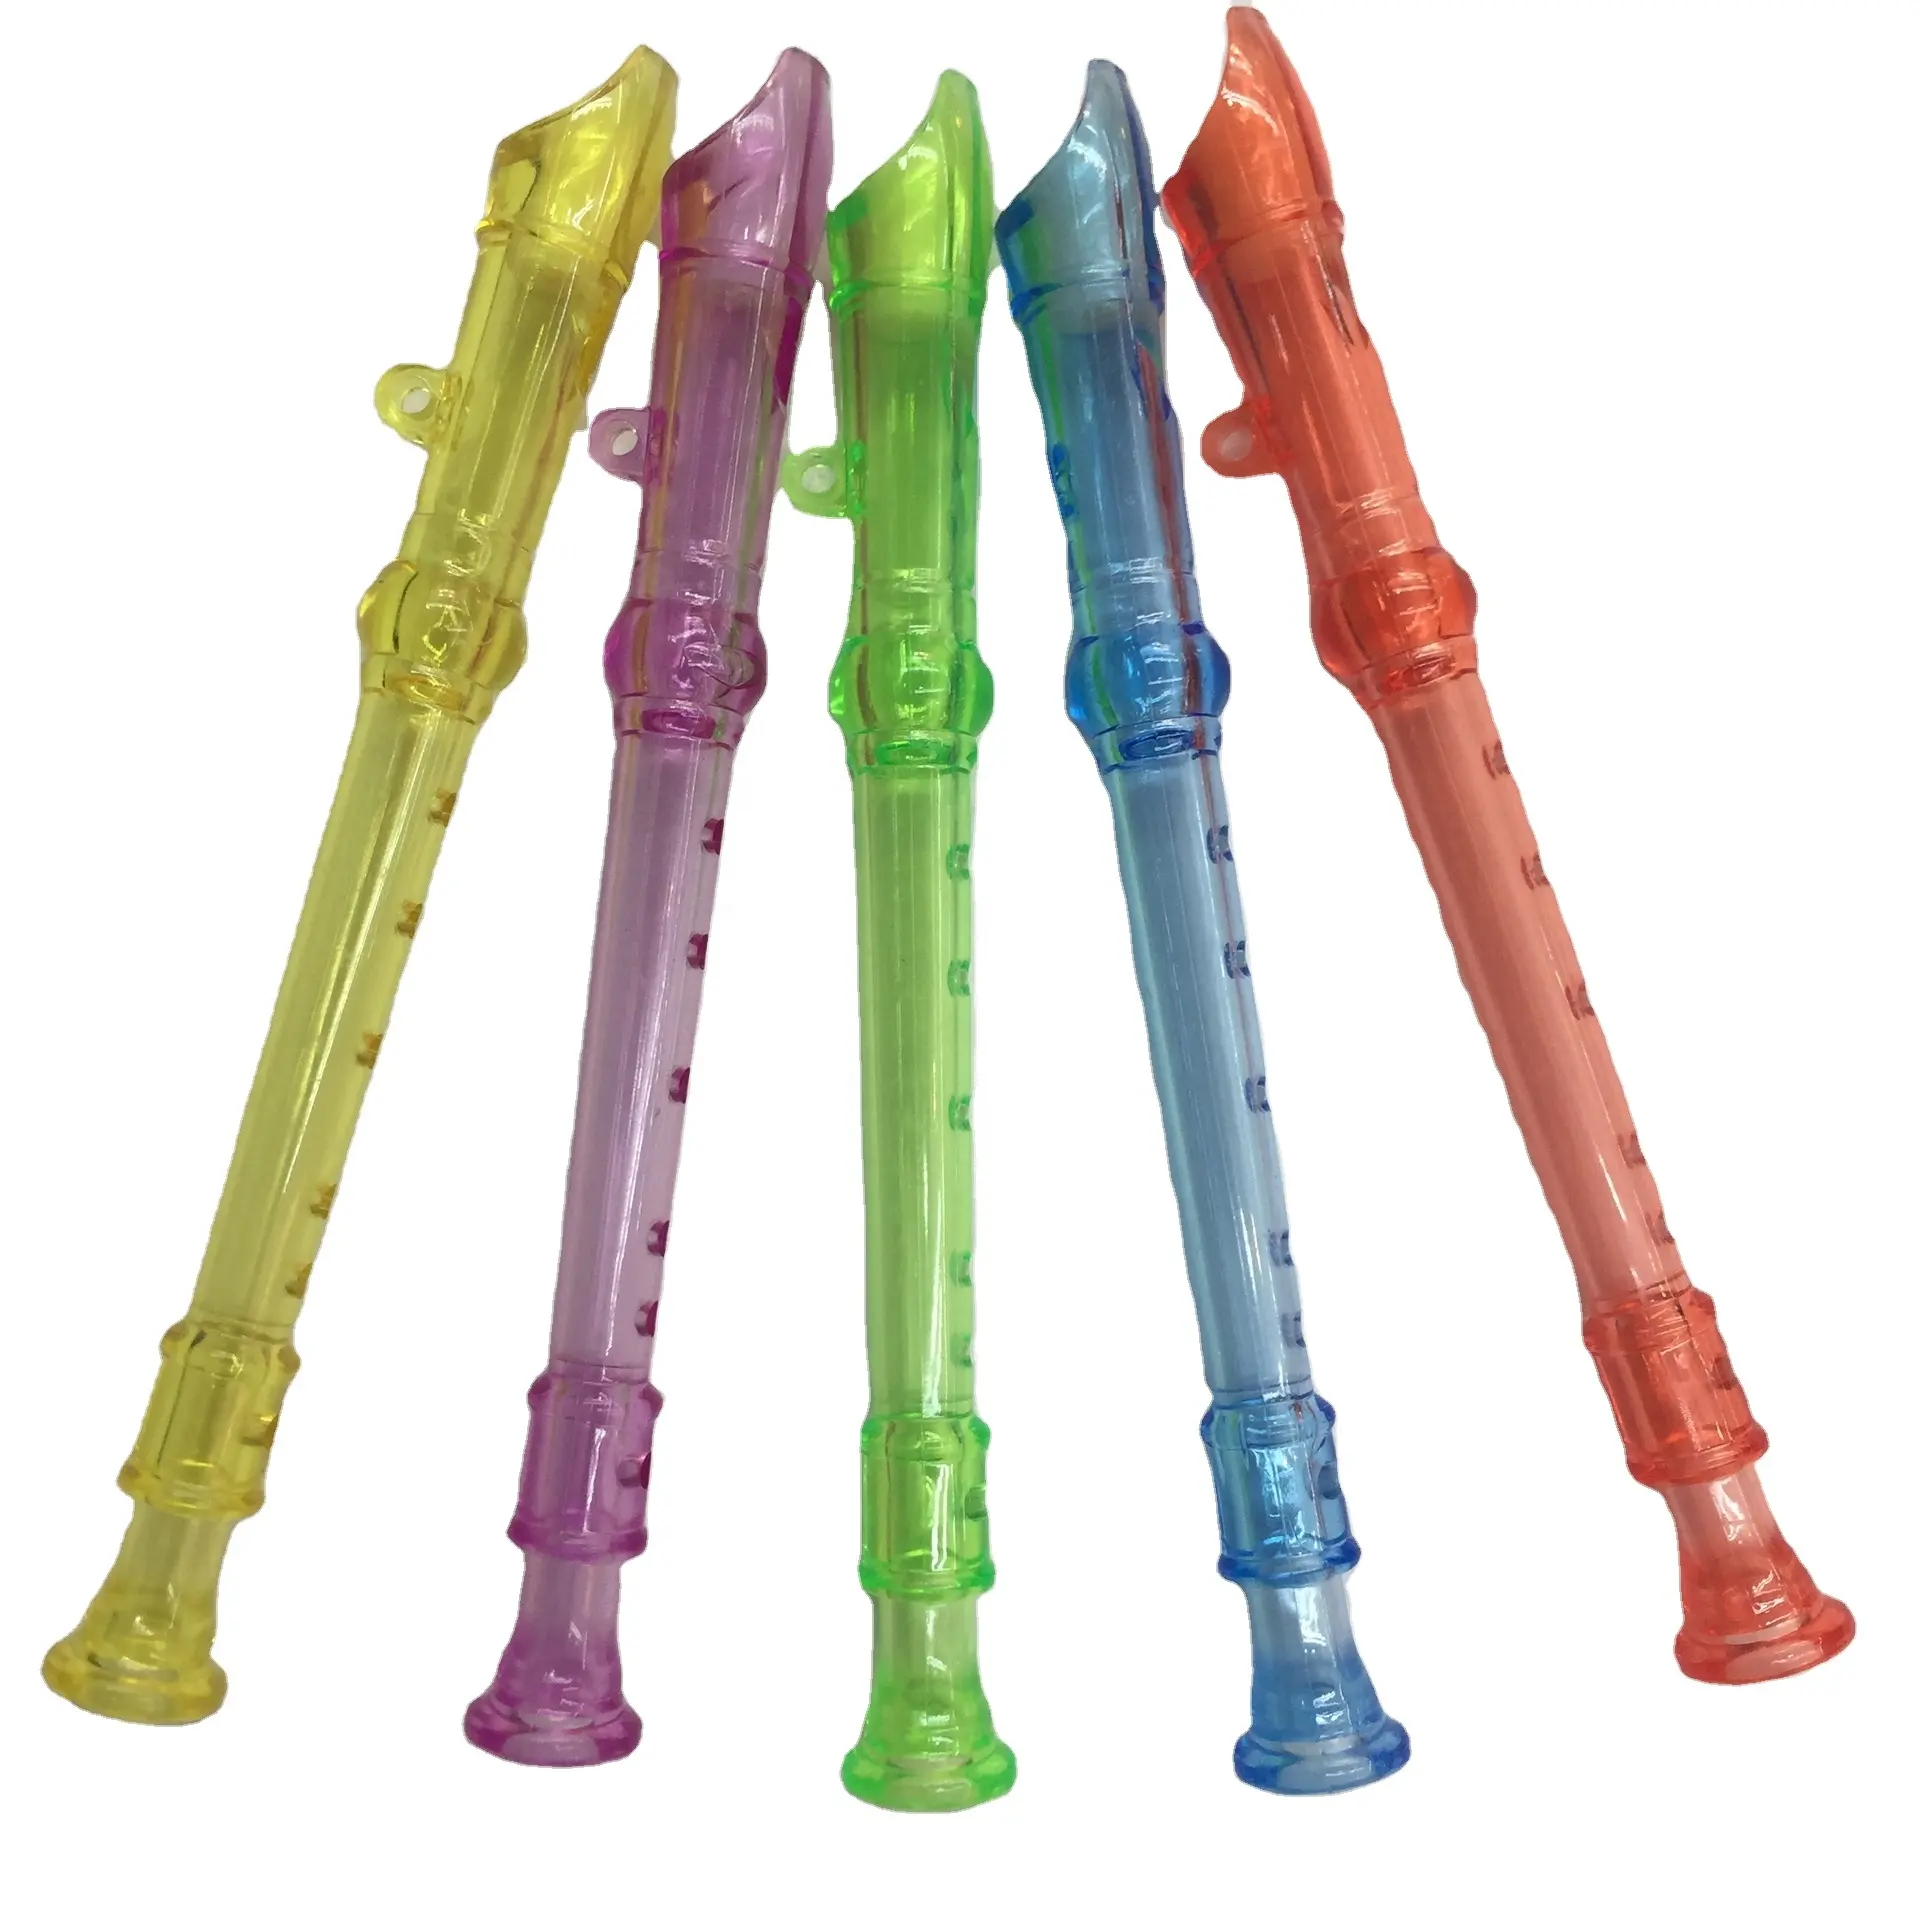 Venta al por mayor de plástico de seis agujeros multicolor transparente para niños práctica de educación temprana flauta de tamaño mini